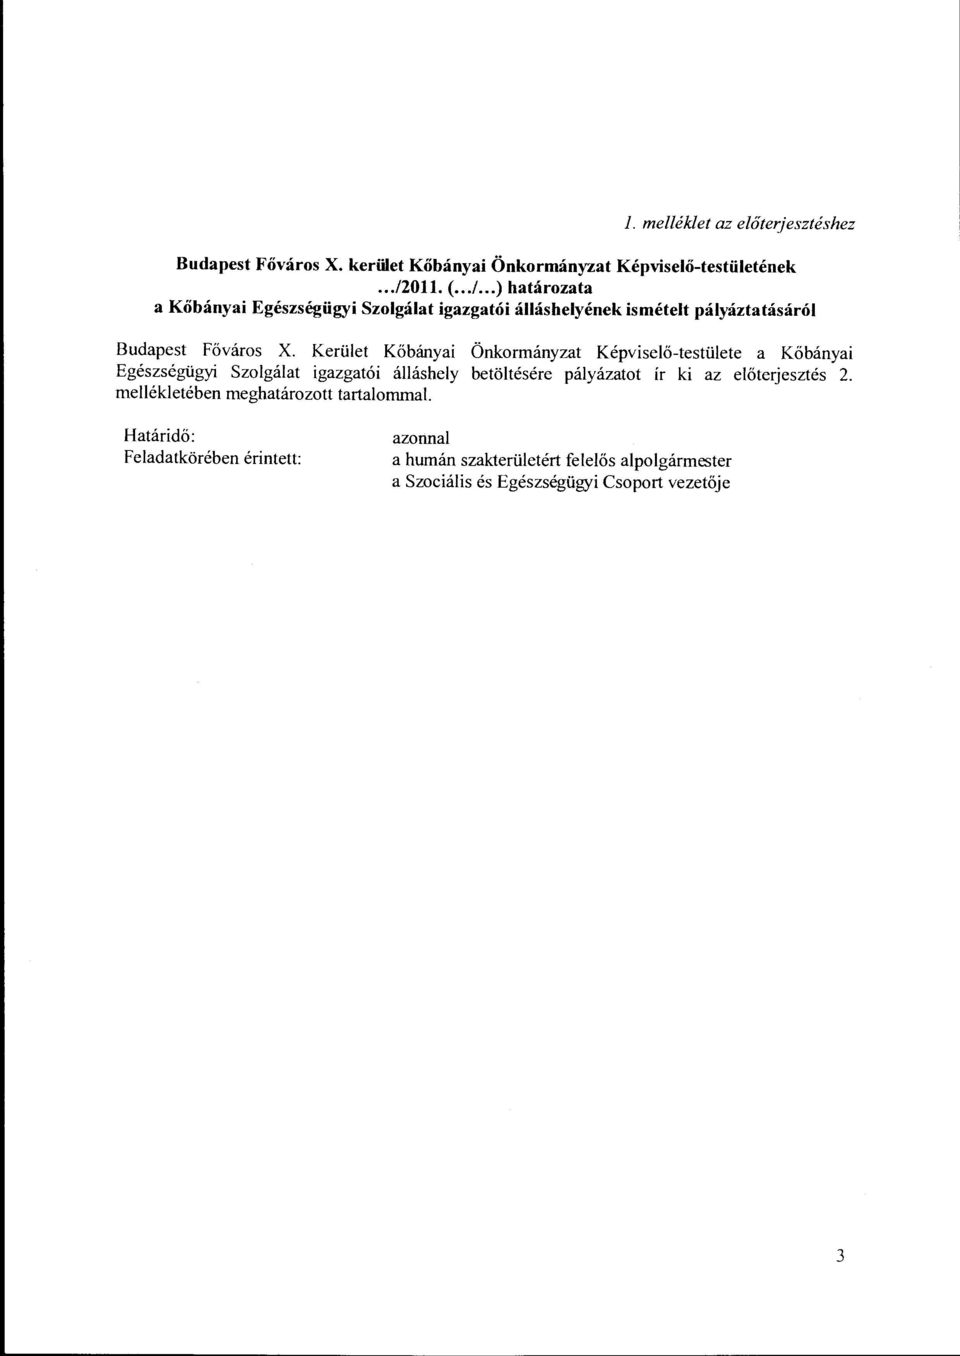 Kerület Kőbányai Önkormányzat Képviselő-testülete a Kőbányai Egészségügyi Szolgálat igazgatói álláshely betöltésére pályázatot ír ki az